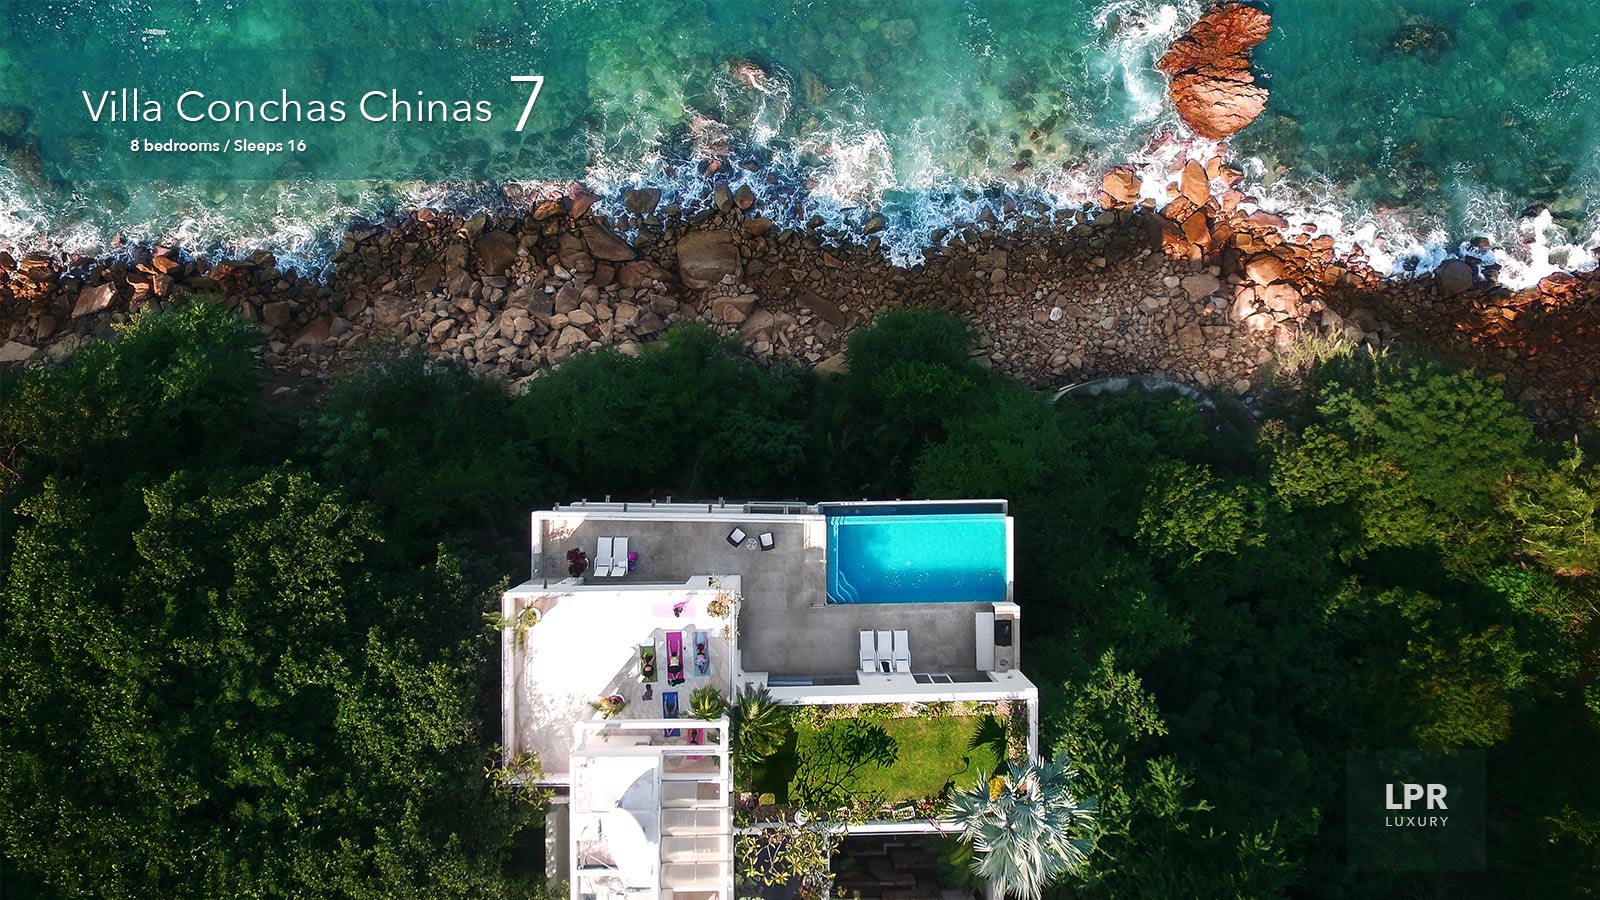 Villa Conchas Chinas 7 - Luxury Puerto Vallarta real estate and vacation rentals - Mexico